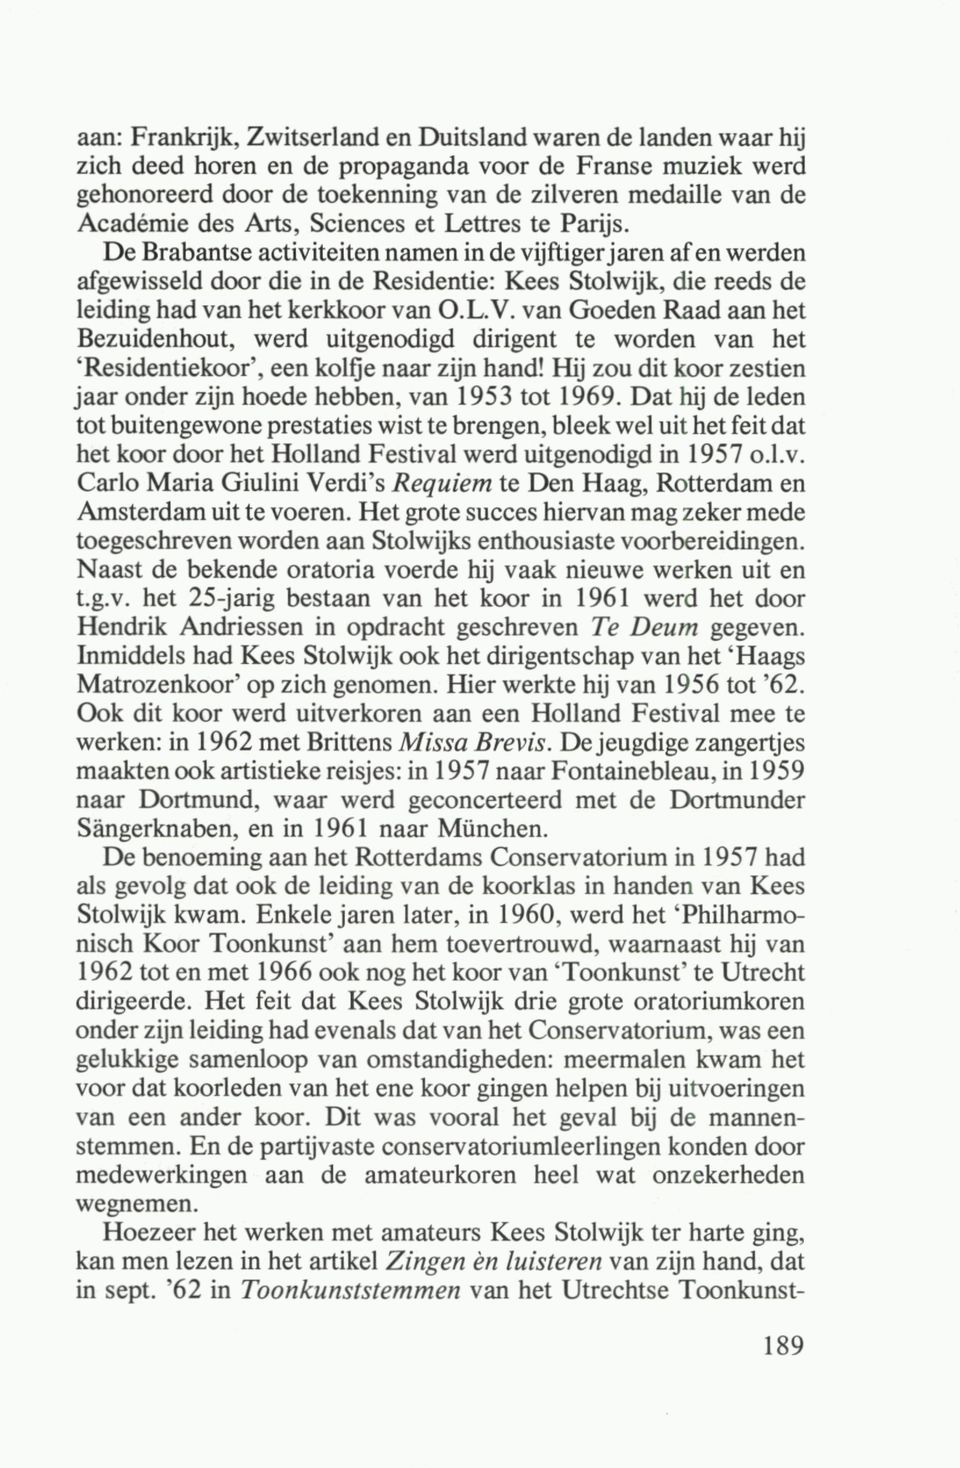 De Brabantse activiteiten namen in de vijftiger jaren af en werden afgewisseld door die in de Residentie: Kees Stolwijk, die reeds de leiding had van het kerkkoor van O.L.V.